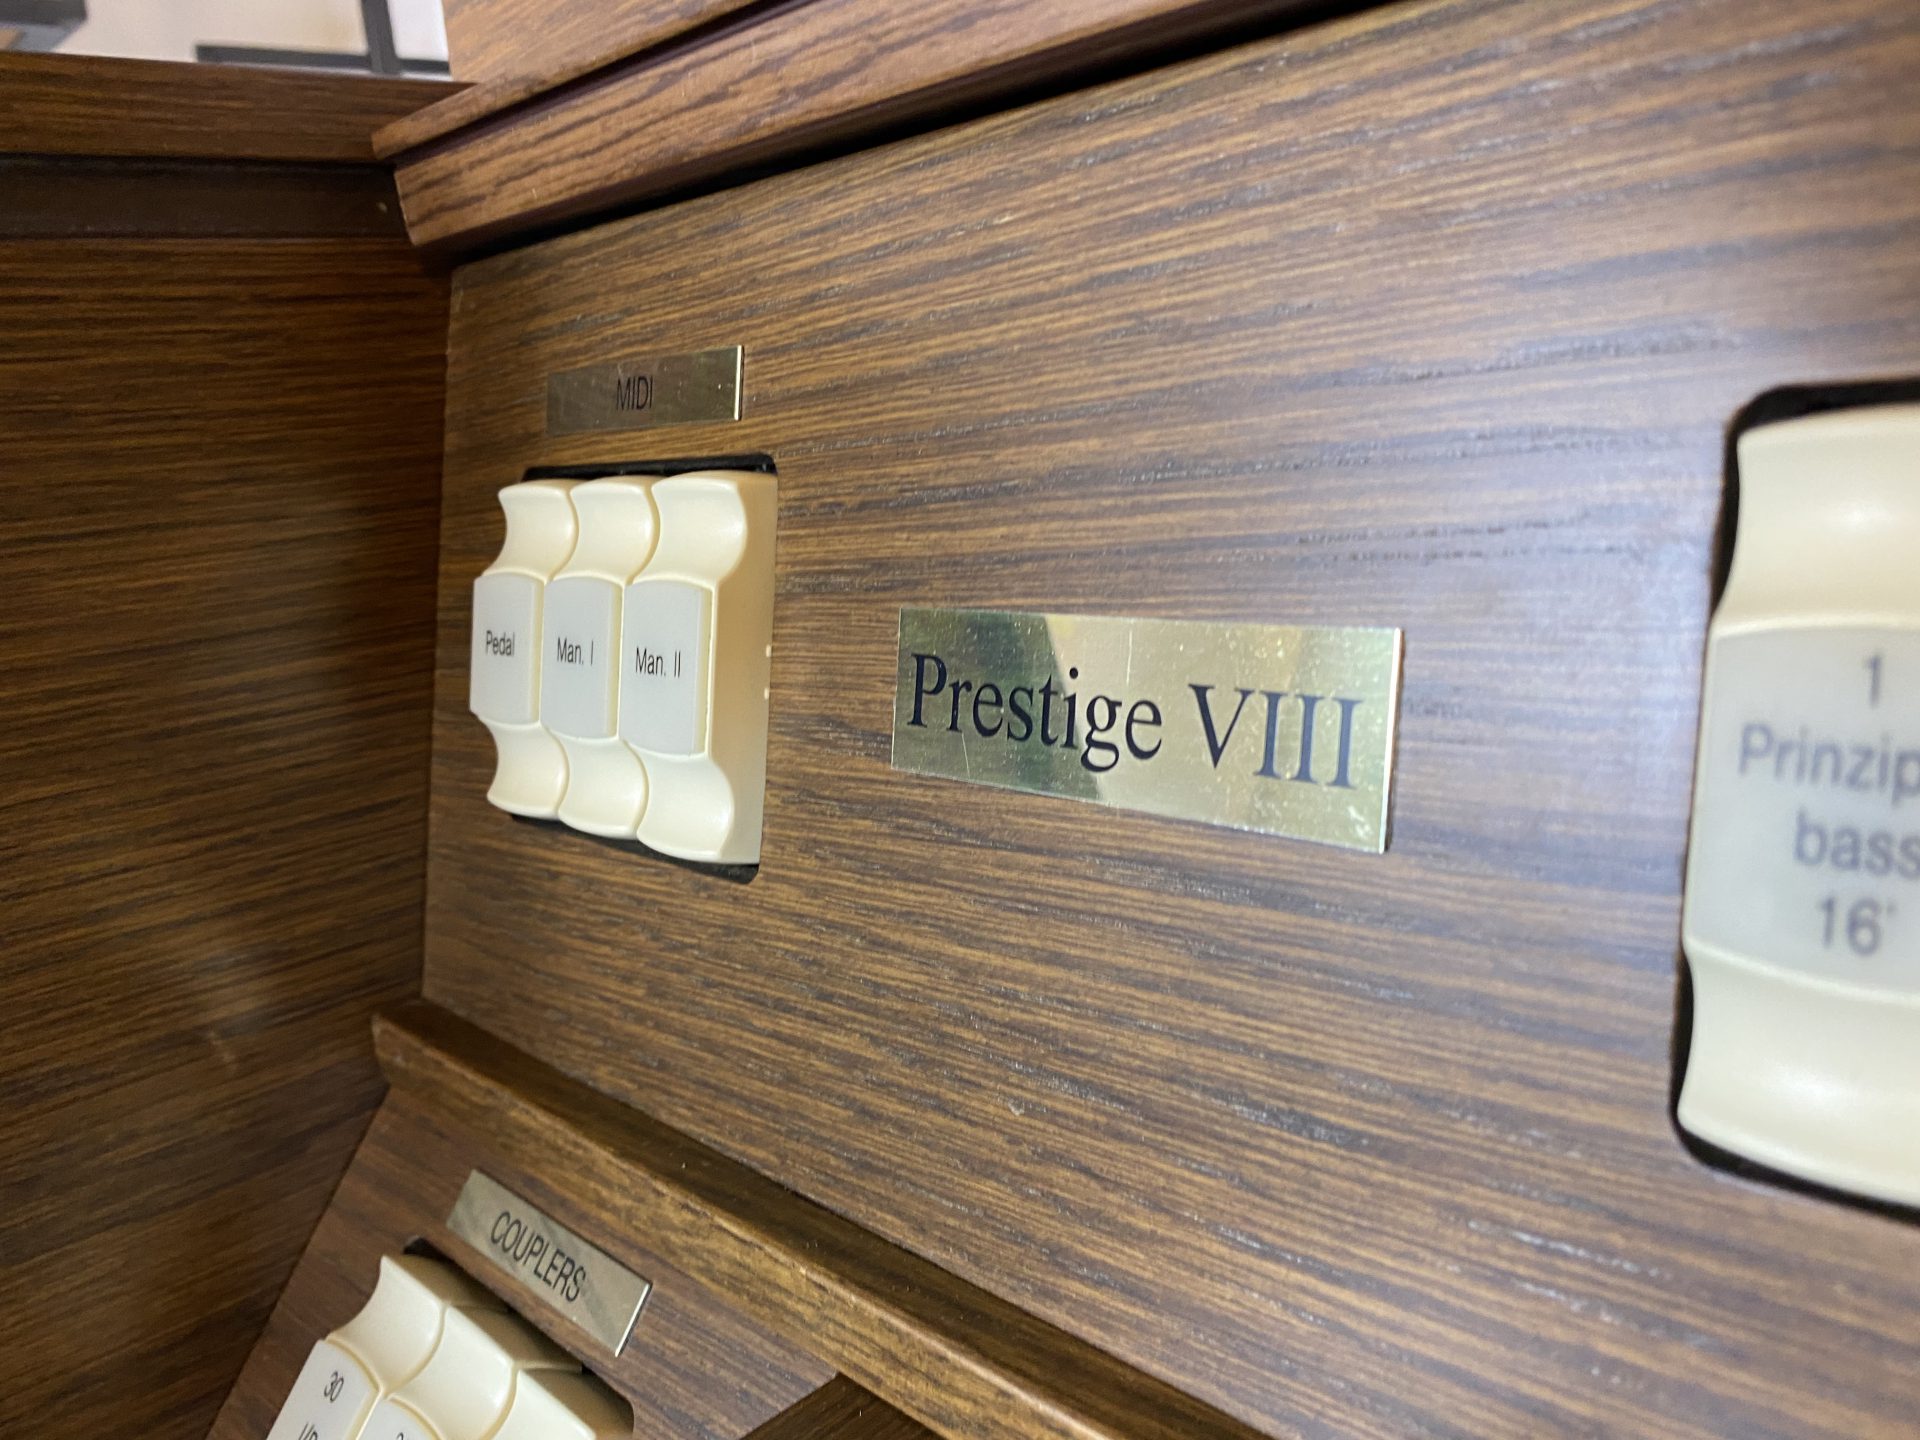 Prestige VIII